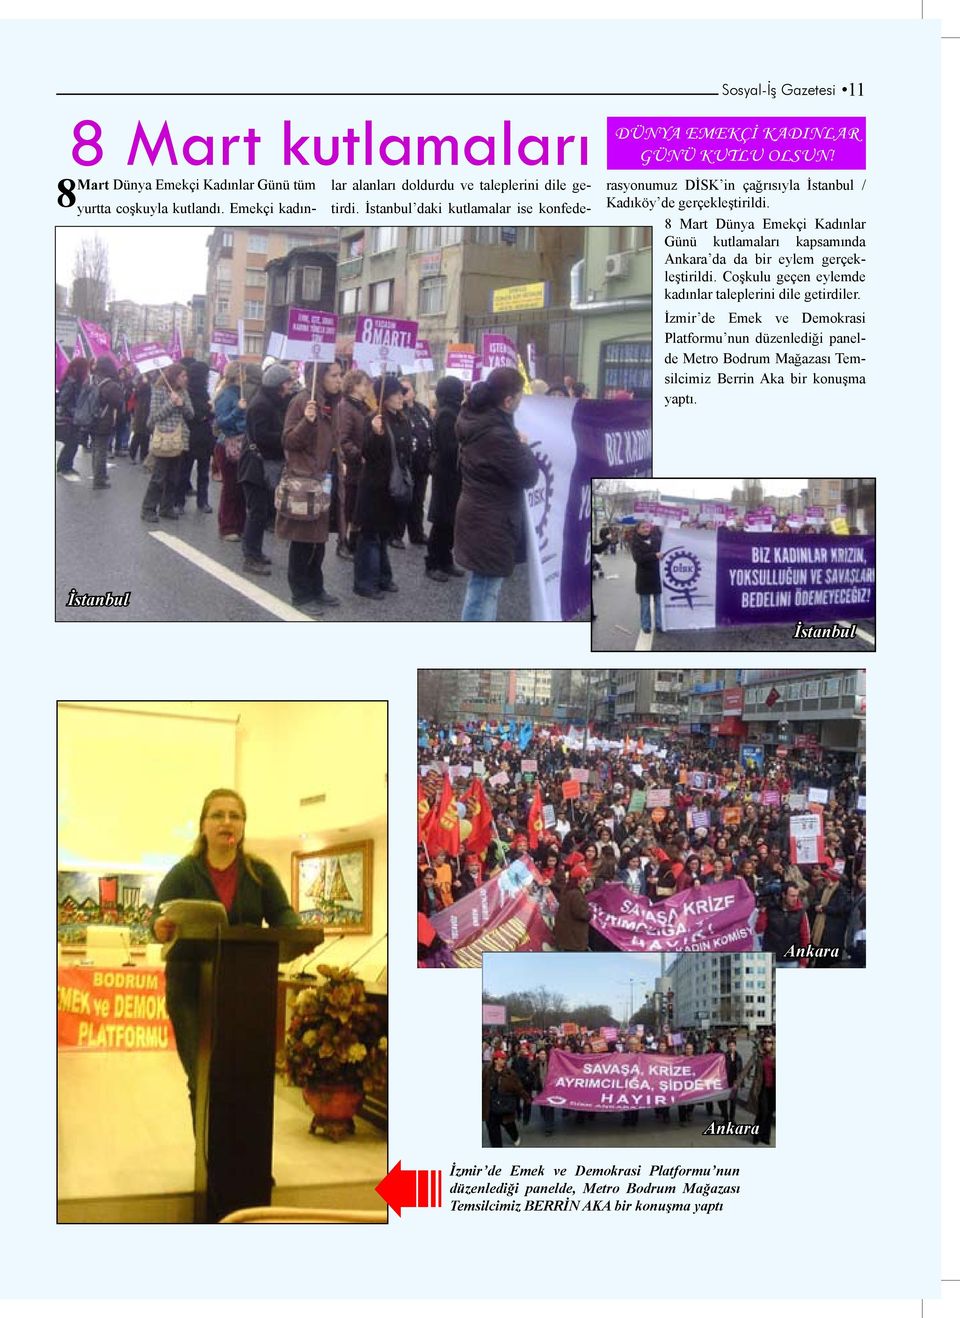 8 Mart Dünya Emekçi Kadınlar Günü kutlamaları kapsamında Ankara da da bir eylem gerçekleştirildi. Coşkulu geçen eylemde kadınlar taleplerini dile getirdiler.